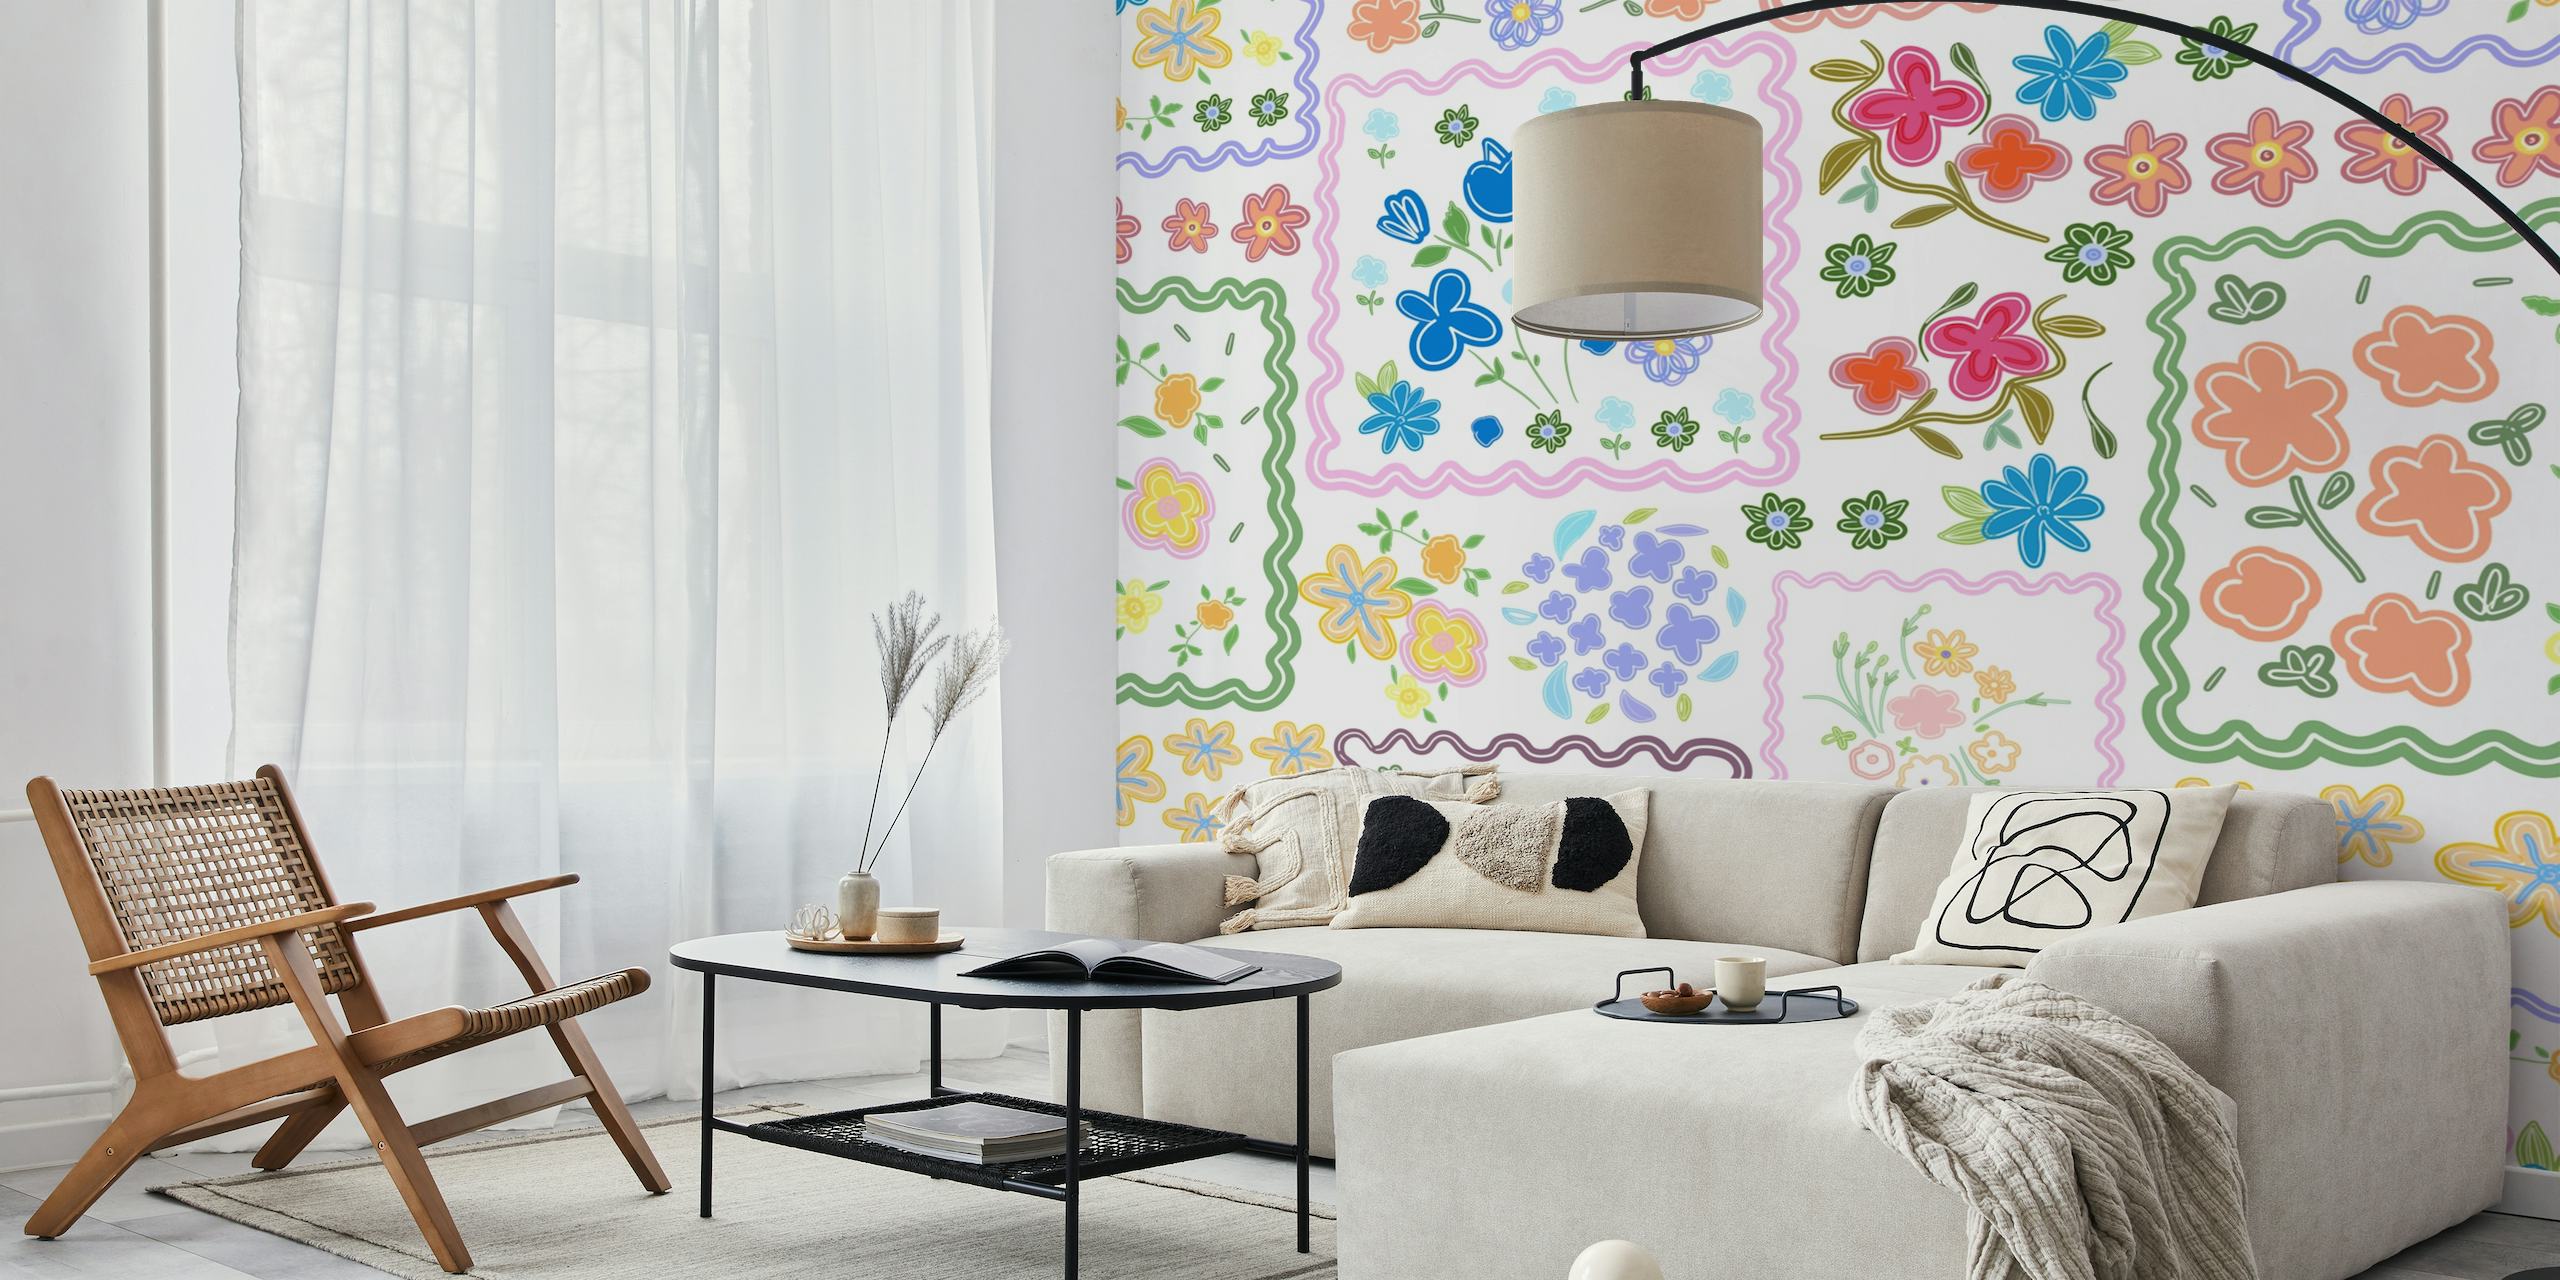 Mural de parede floral colorido em estilo patchwork com uma variedade de flores e padrões